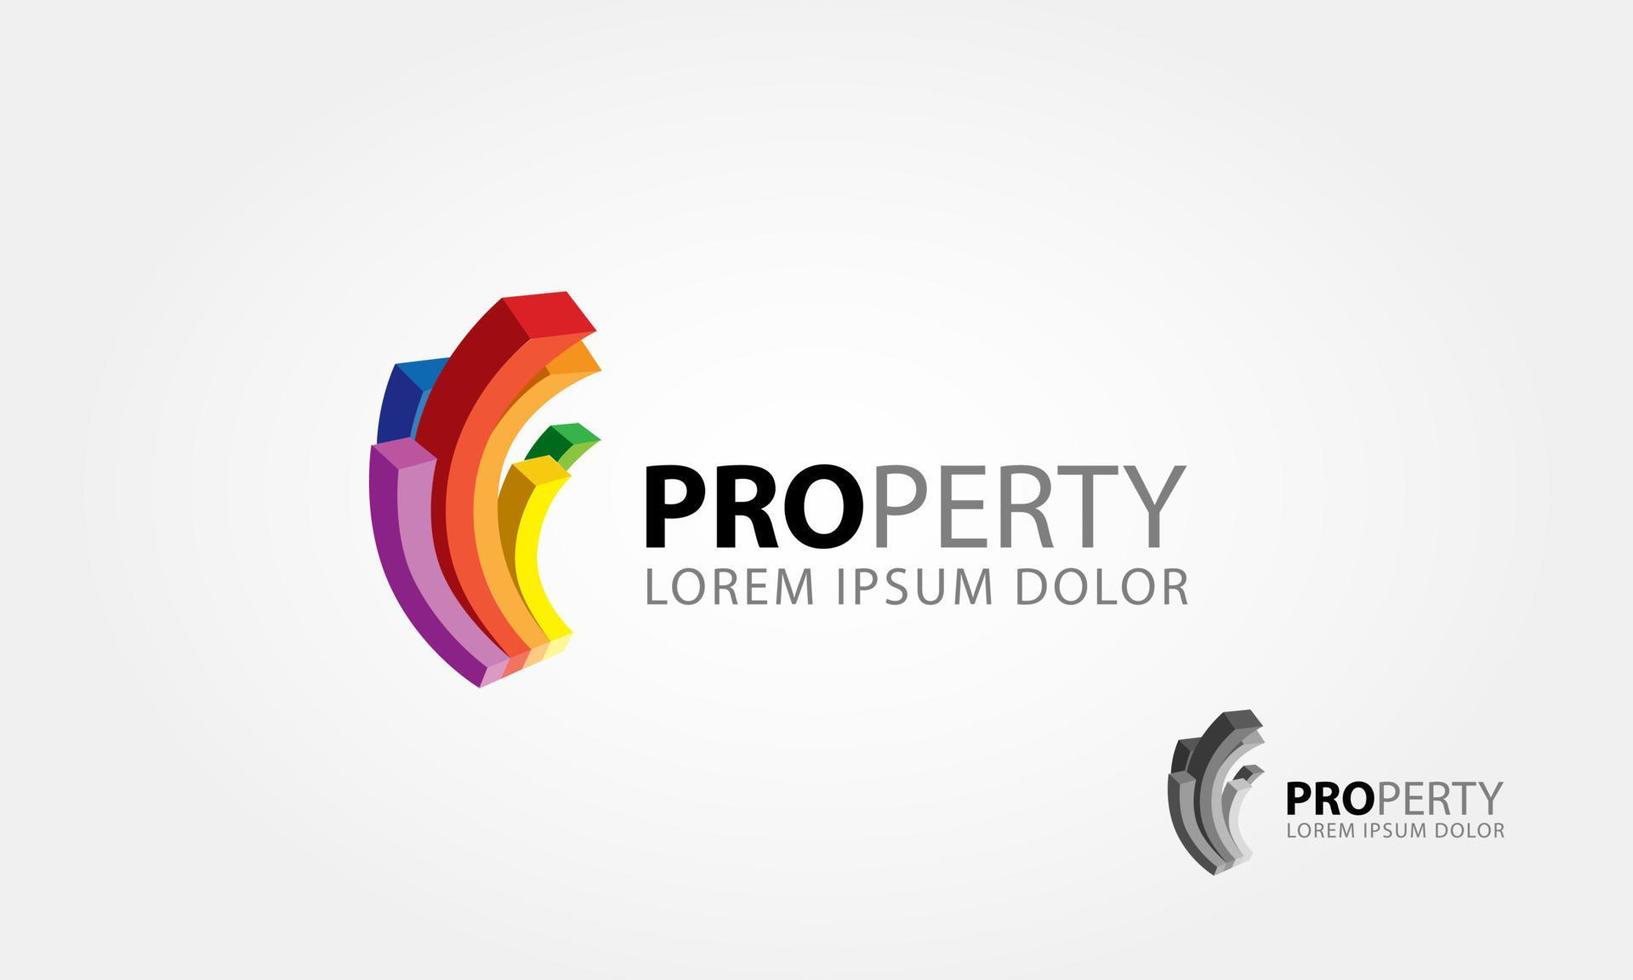 modello di logo vettoriale di proprietà. La barra della curva di colore astratta 3d simboleggia un edificio o una proprietà. illustrazione multicolore di logo vettoriale.